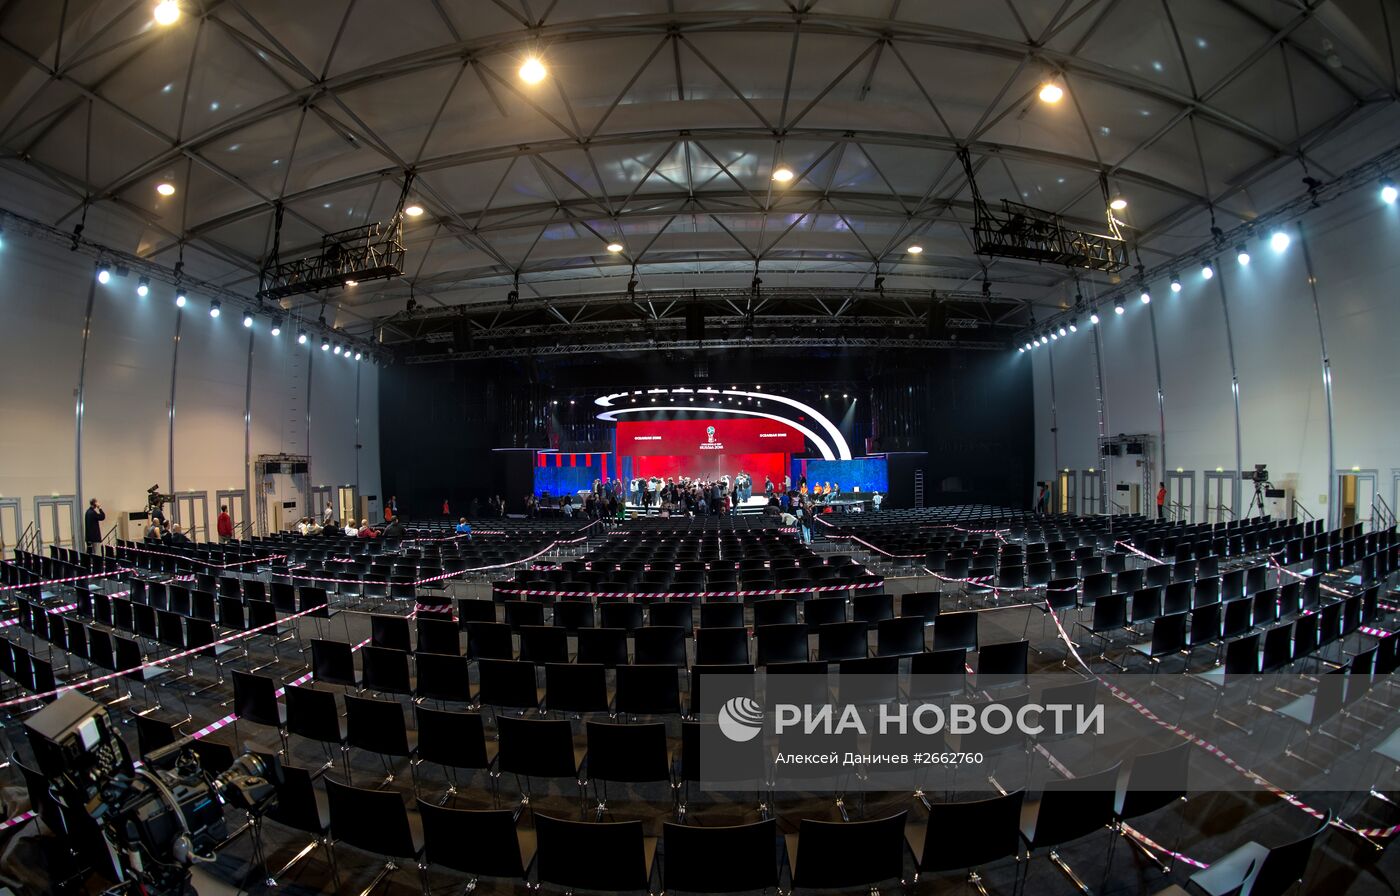 Подготовка к предварительной жеребьевке ЧМ-2018 по футболу в Санкт-Петербурге